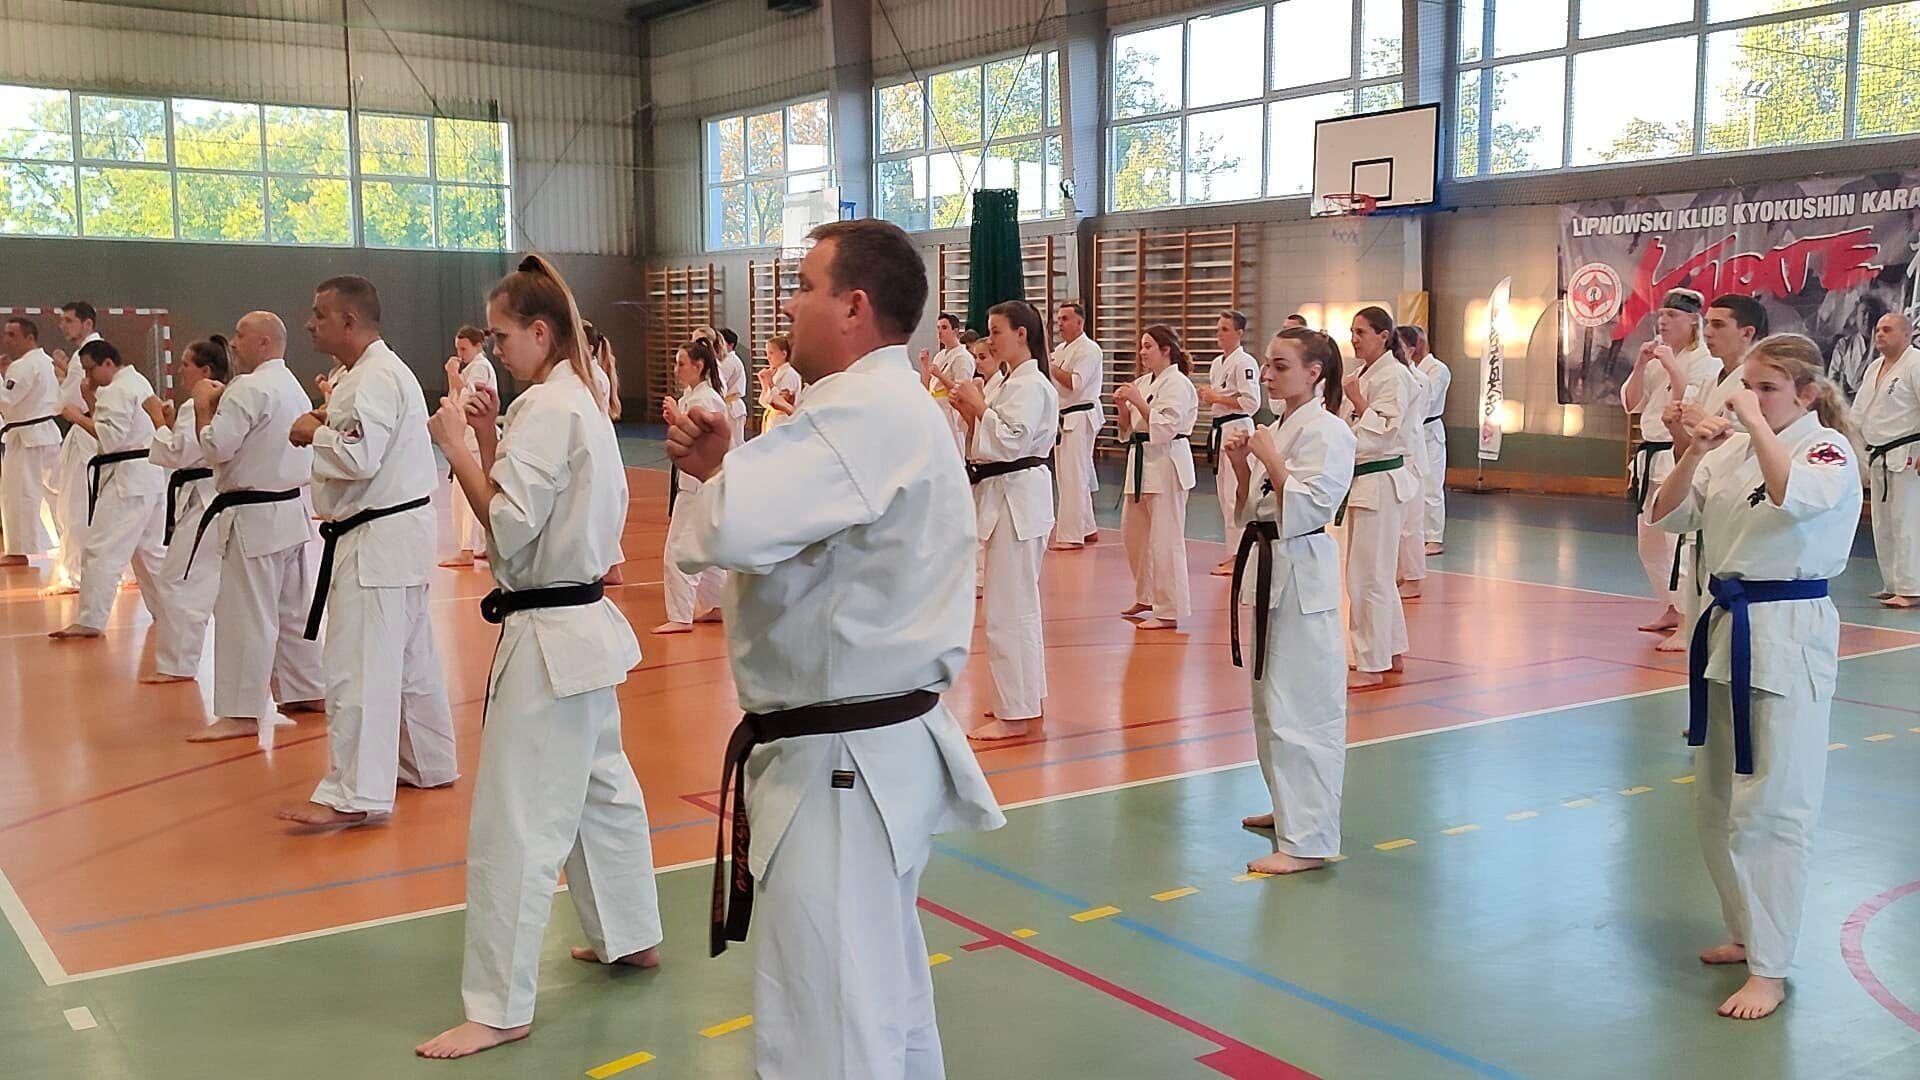 Zdj. nr. 3. Seminarium szkoleniowe Karate Kyokushin w Lipnie